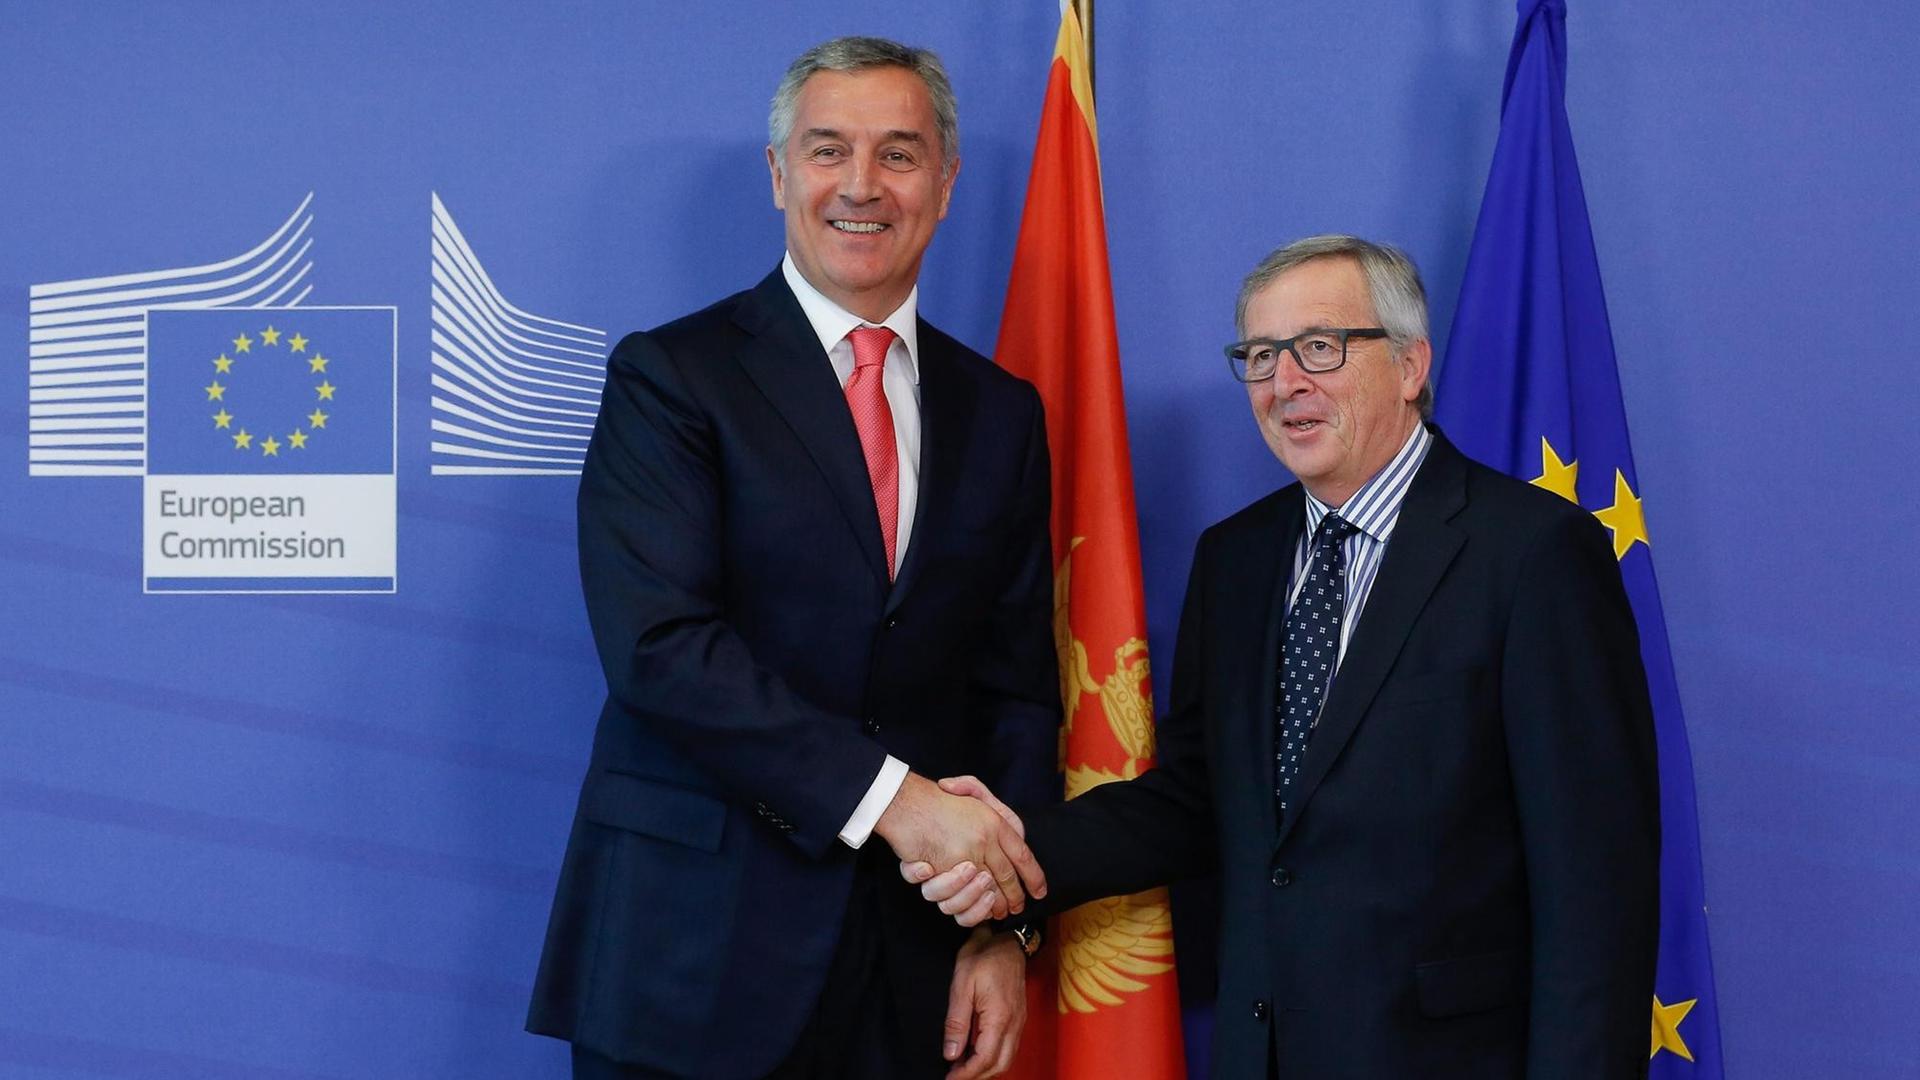 Der montenegrinische Ministerpräsident Milo Djukanovic wird in Brüssel von EU-Kommissionspräsident Jean-Claude Juncker empfangen.